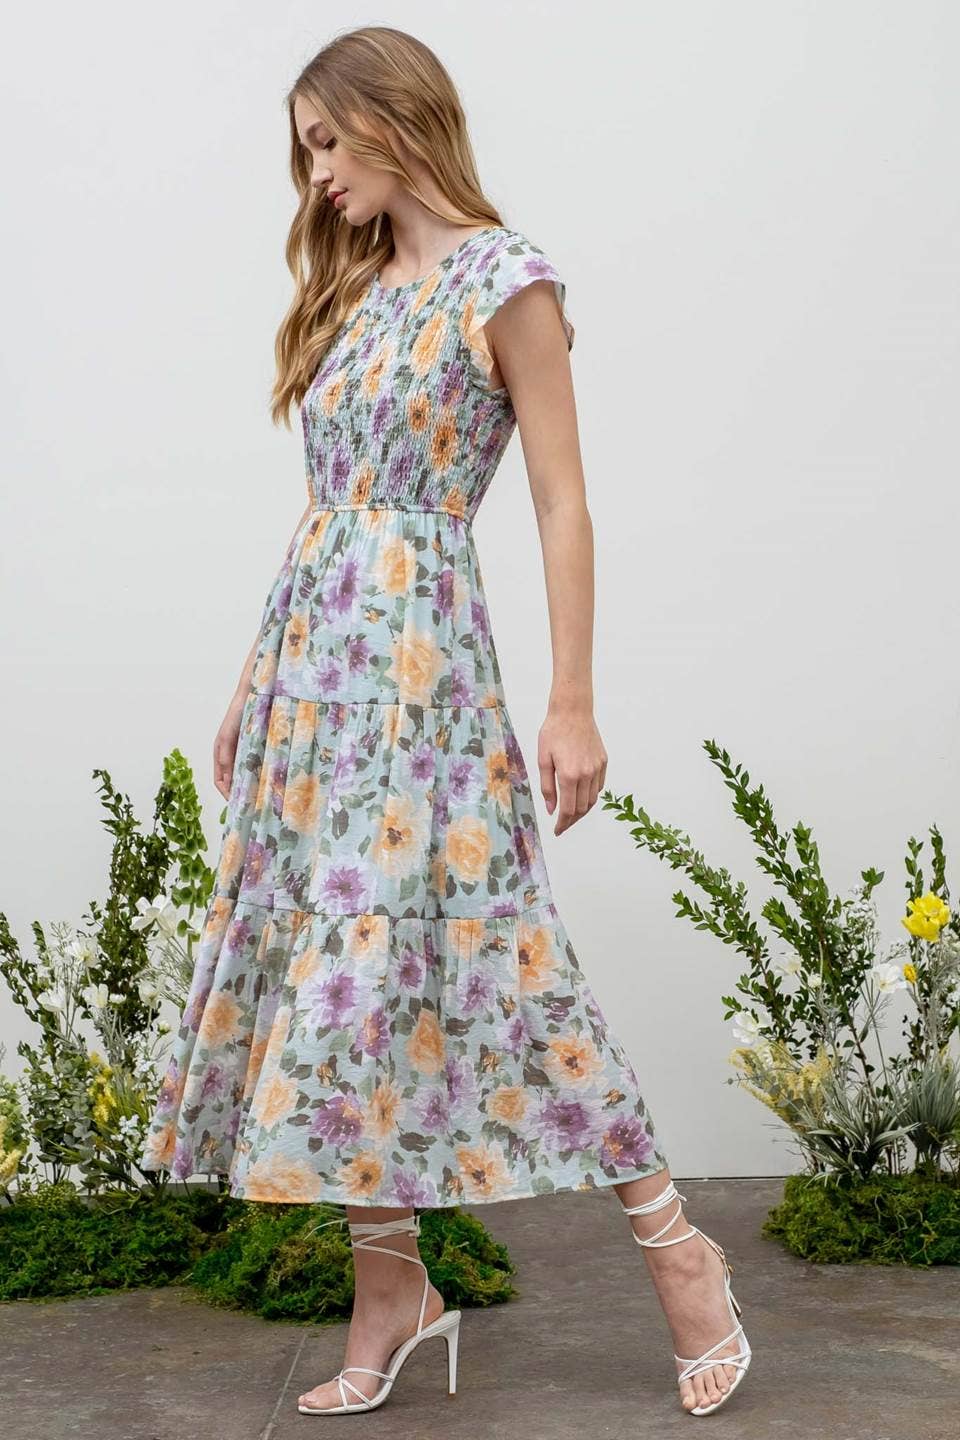 Floral Smocked Dress, Lavender Mint